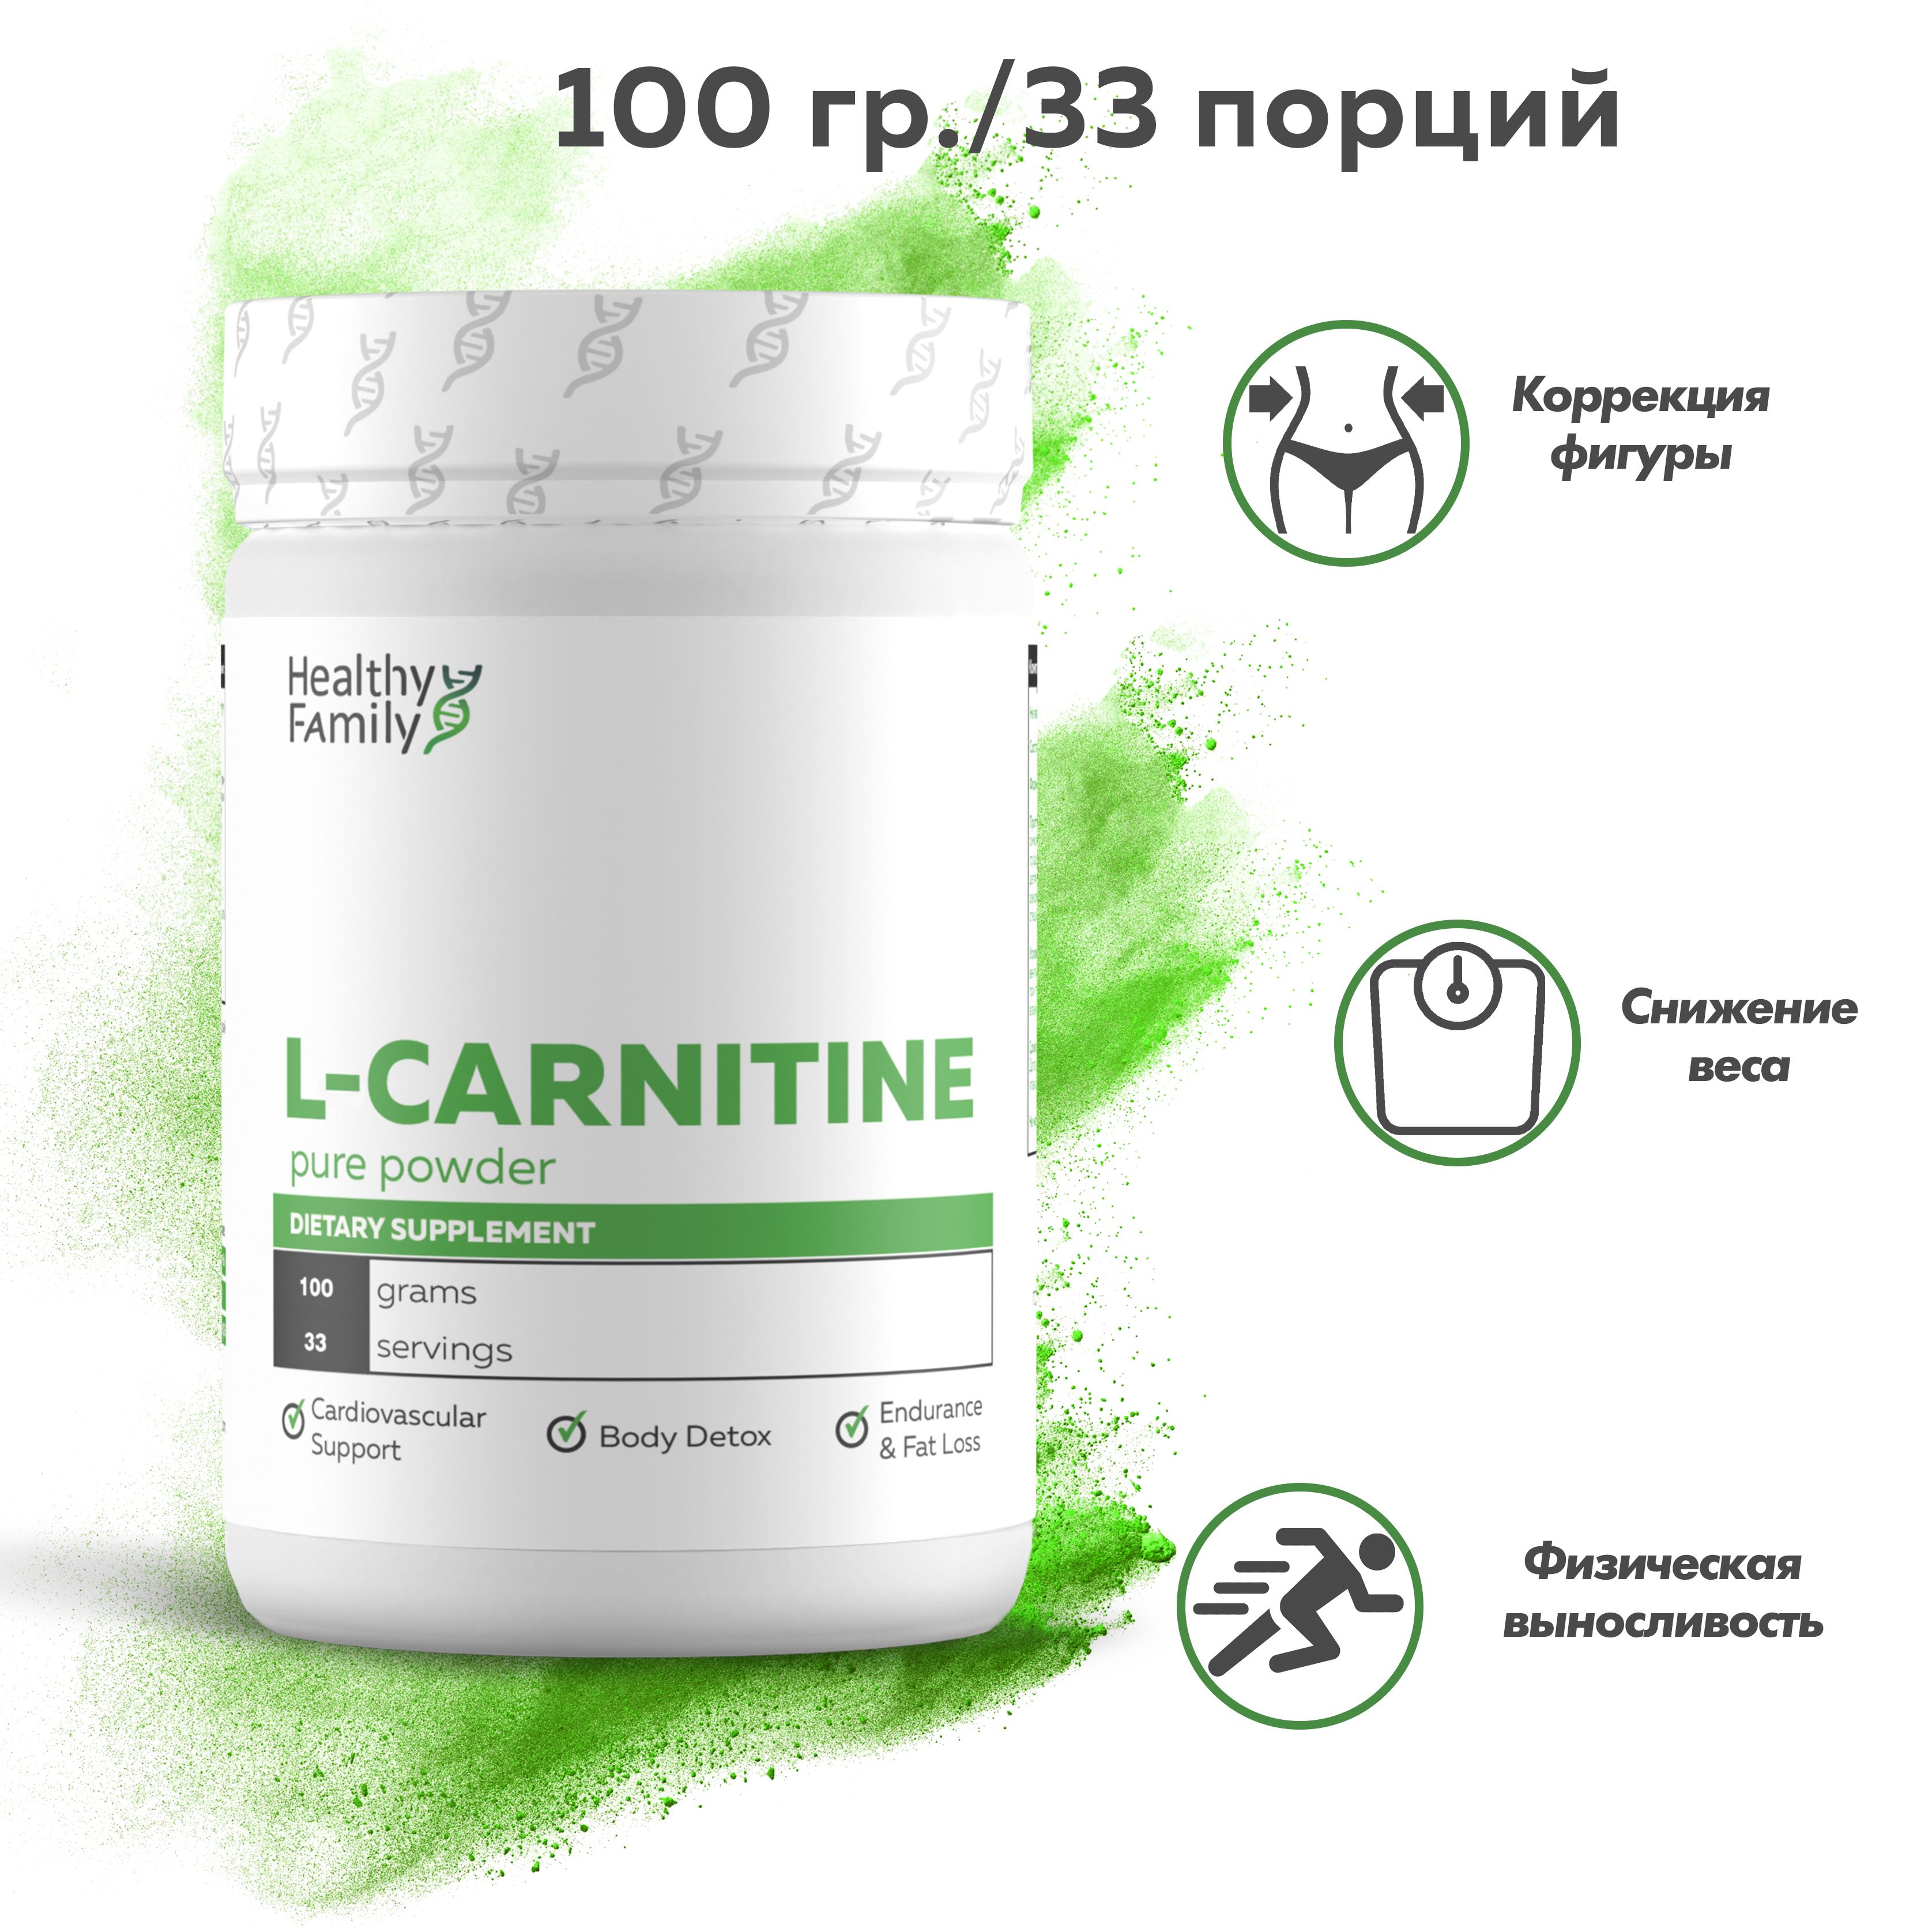 HealthyFamily,L-CarnitineTartrate,Л-КарнитинТартратчистыйпорошок:100Г,33порции.Жиросжигатель/Контрольвеса